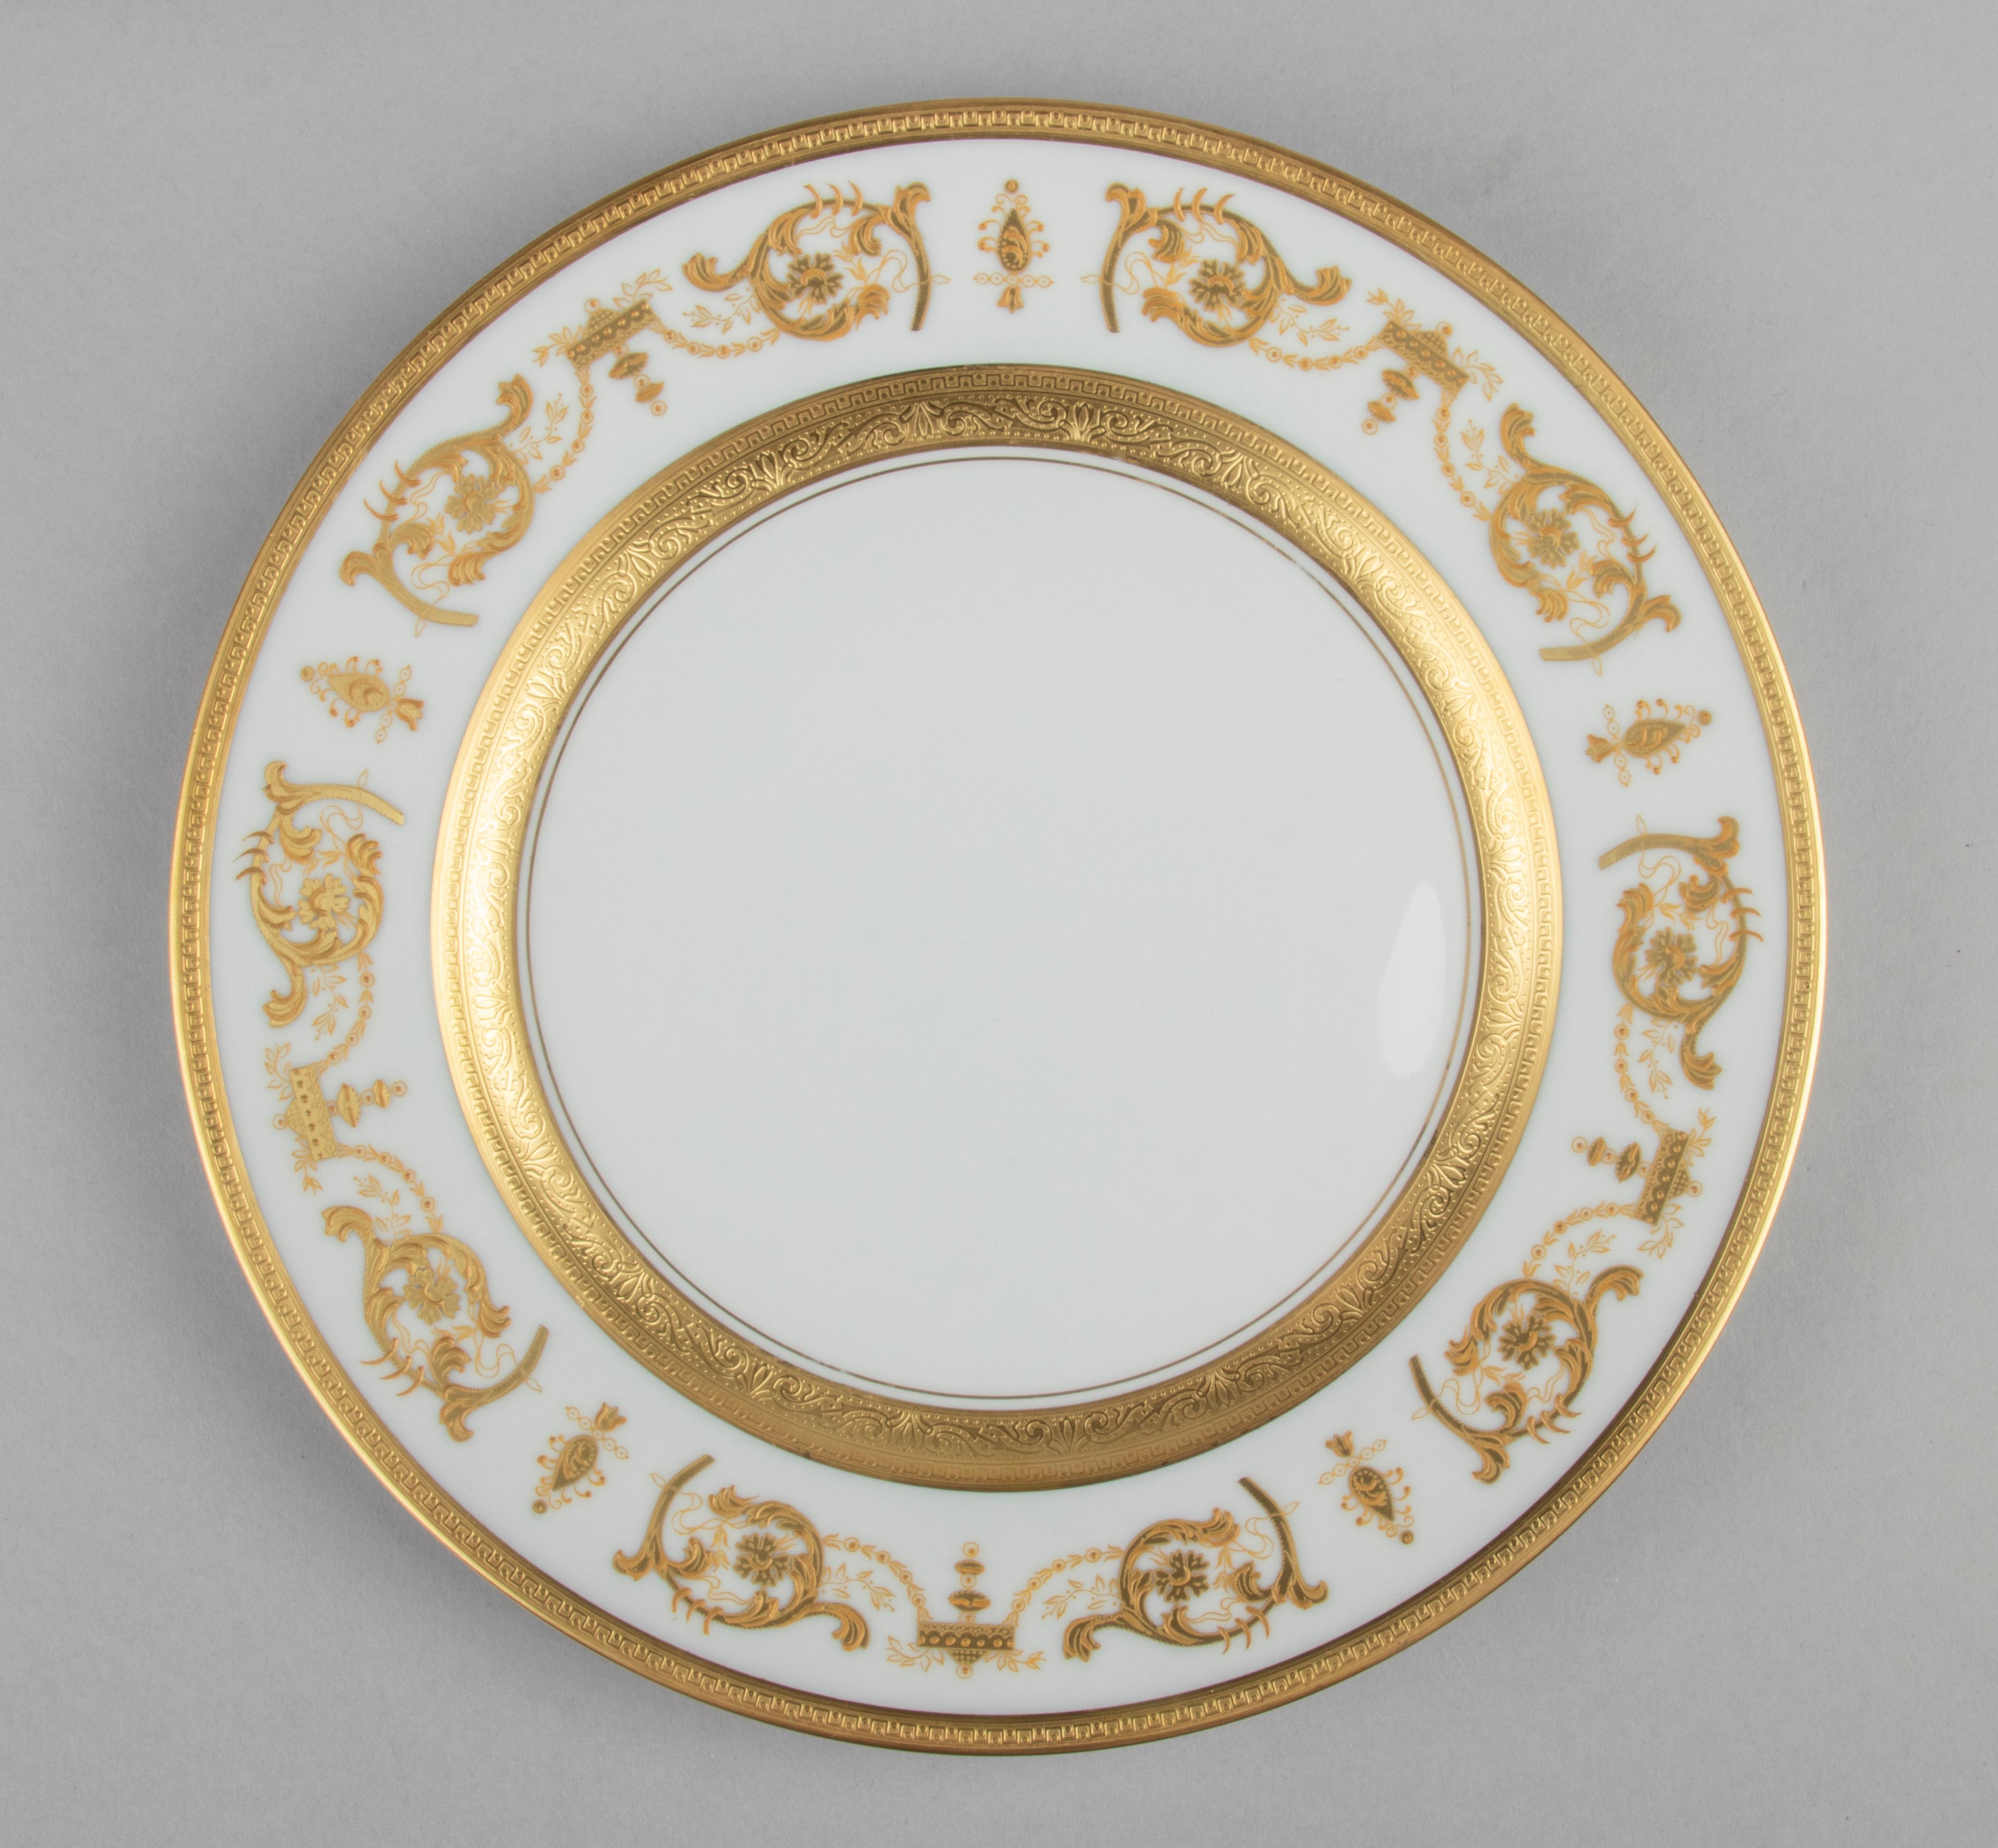 Set of 6 Porcelain Dinner Plates made by Haviland model Impérator Or 10